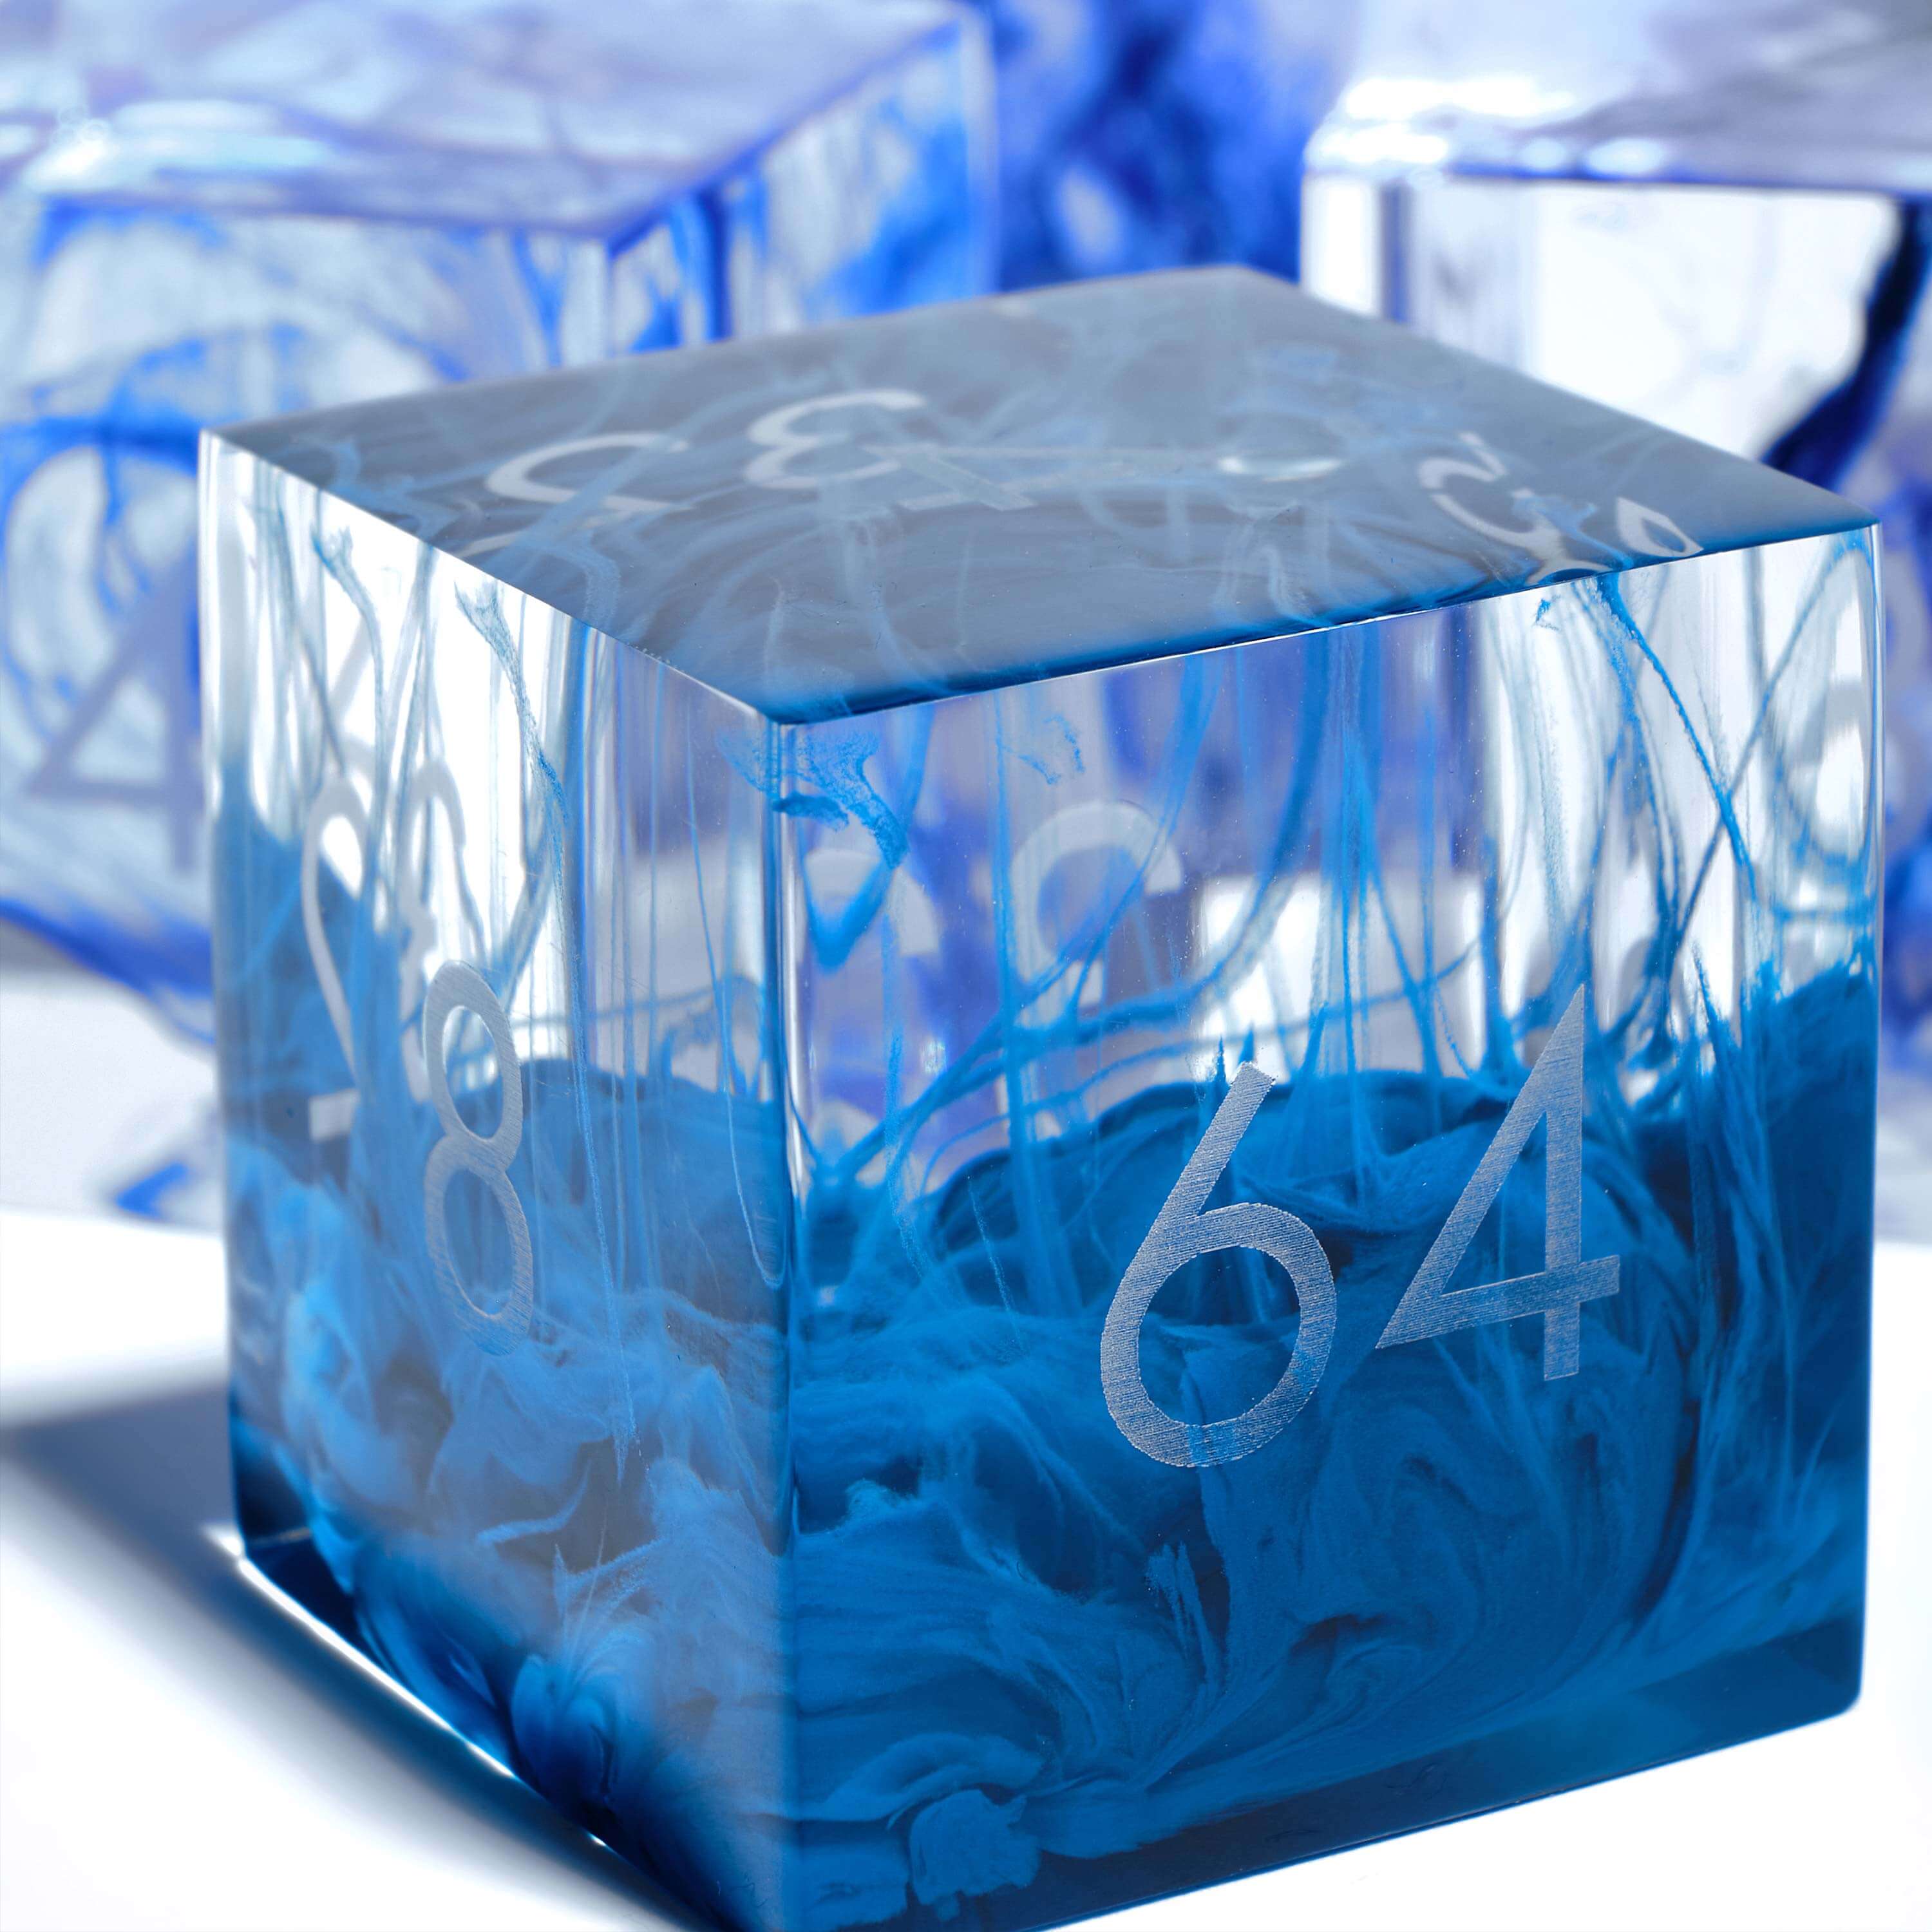 Blue streaks in a clear resin doubling cube